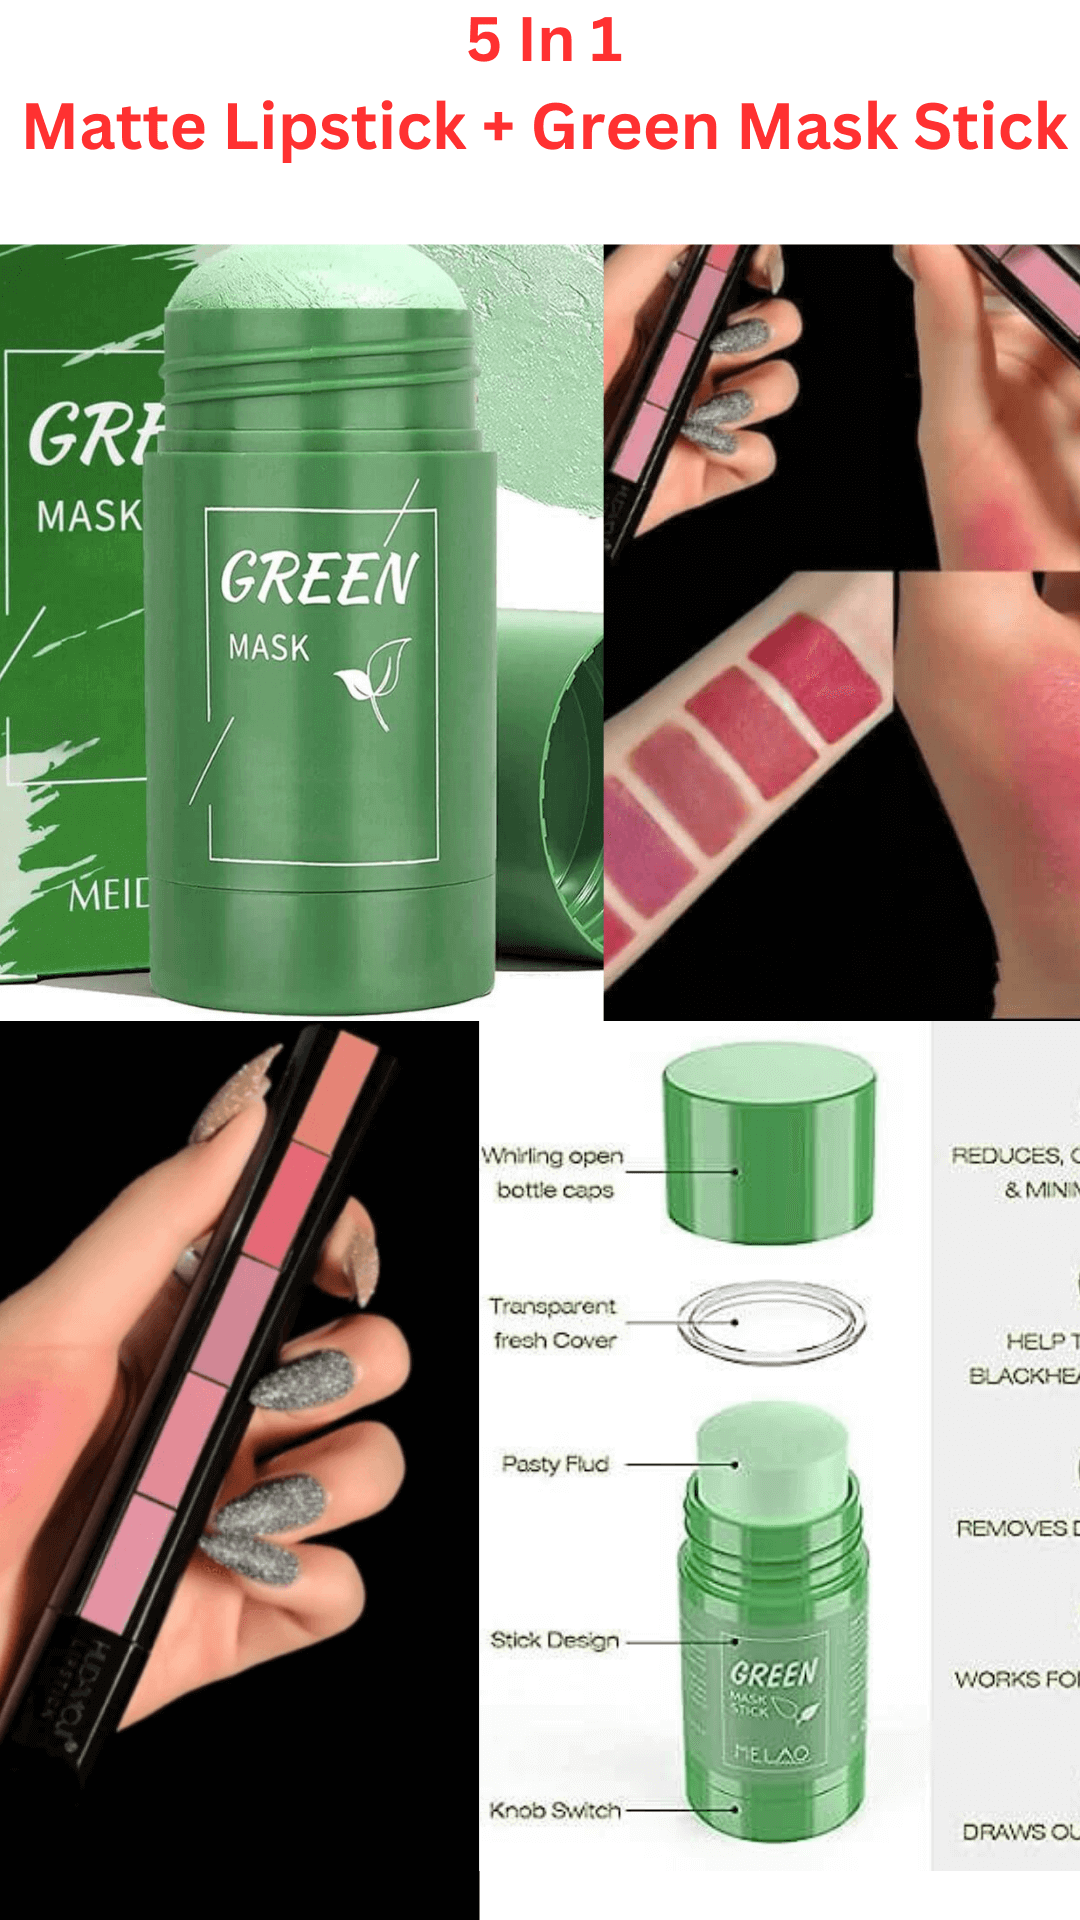 Green Mask Stick | Black Head Remover | Oil Control 100% Original